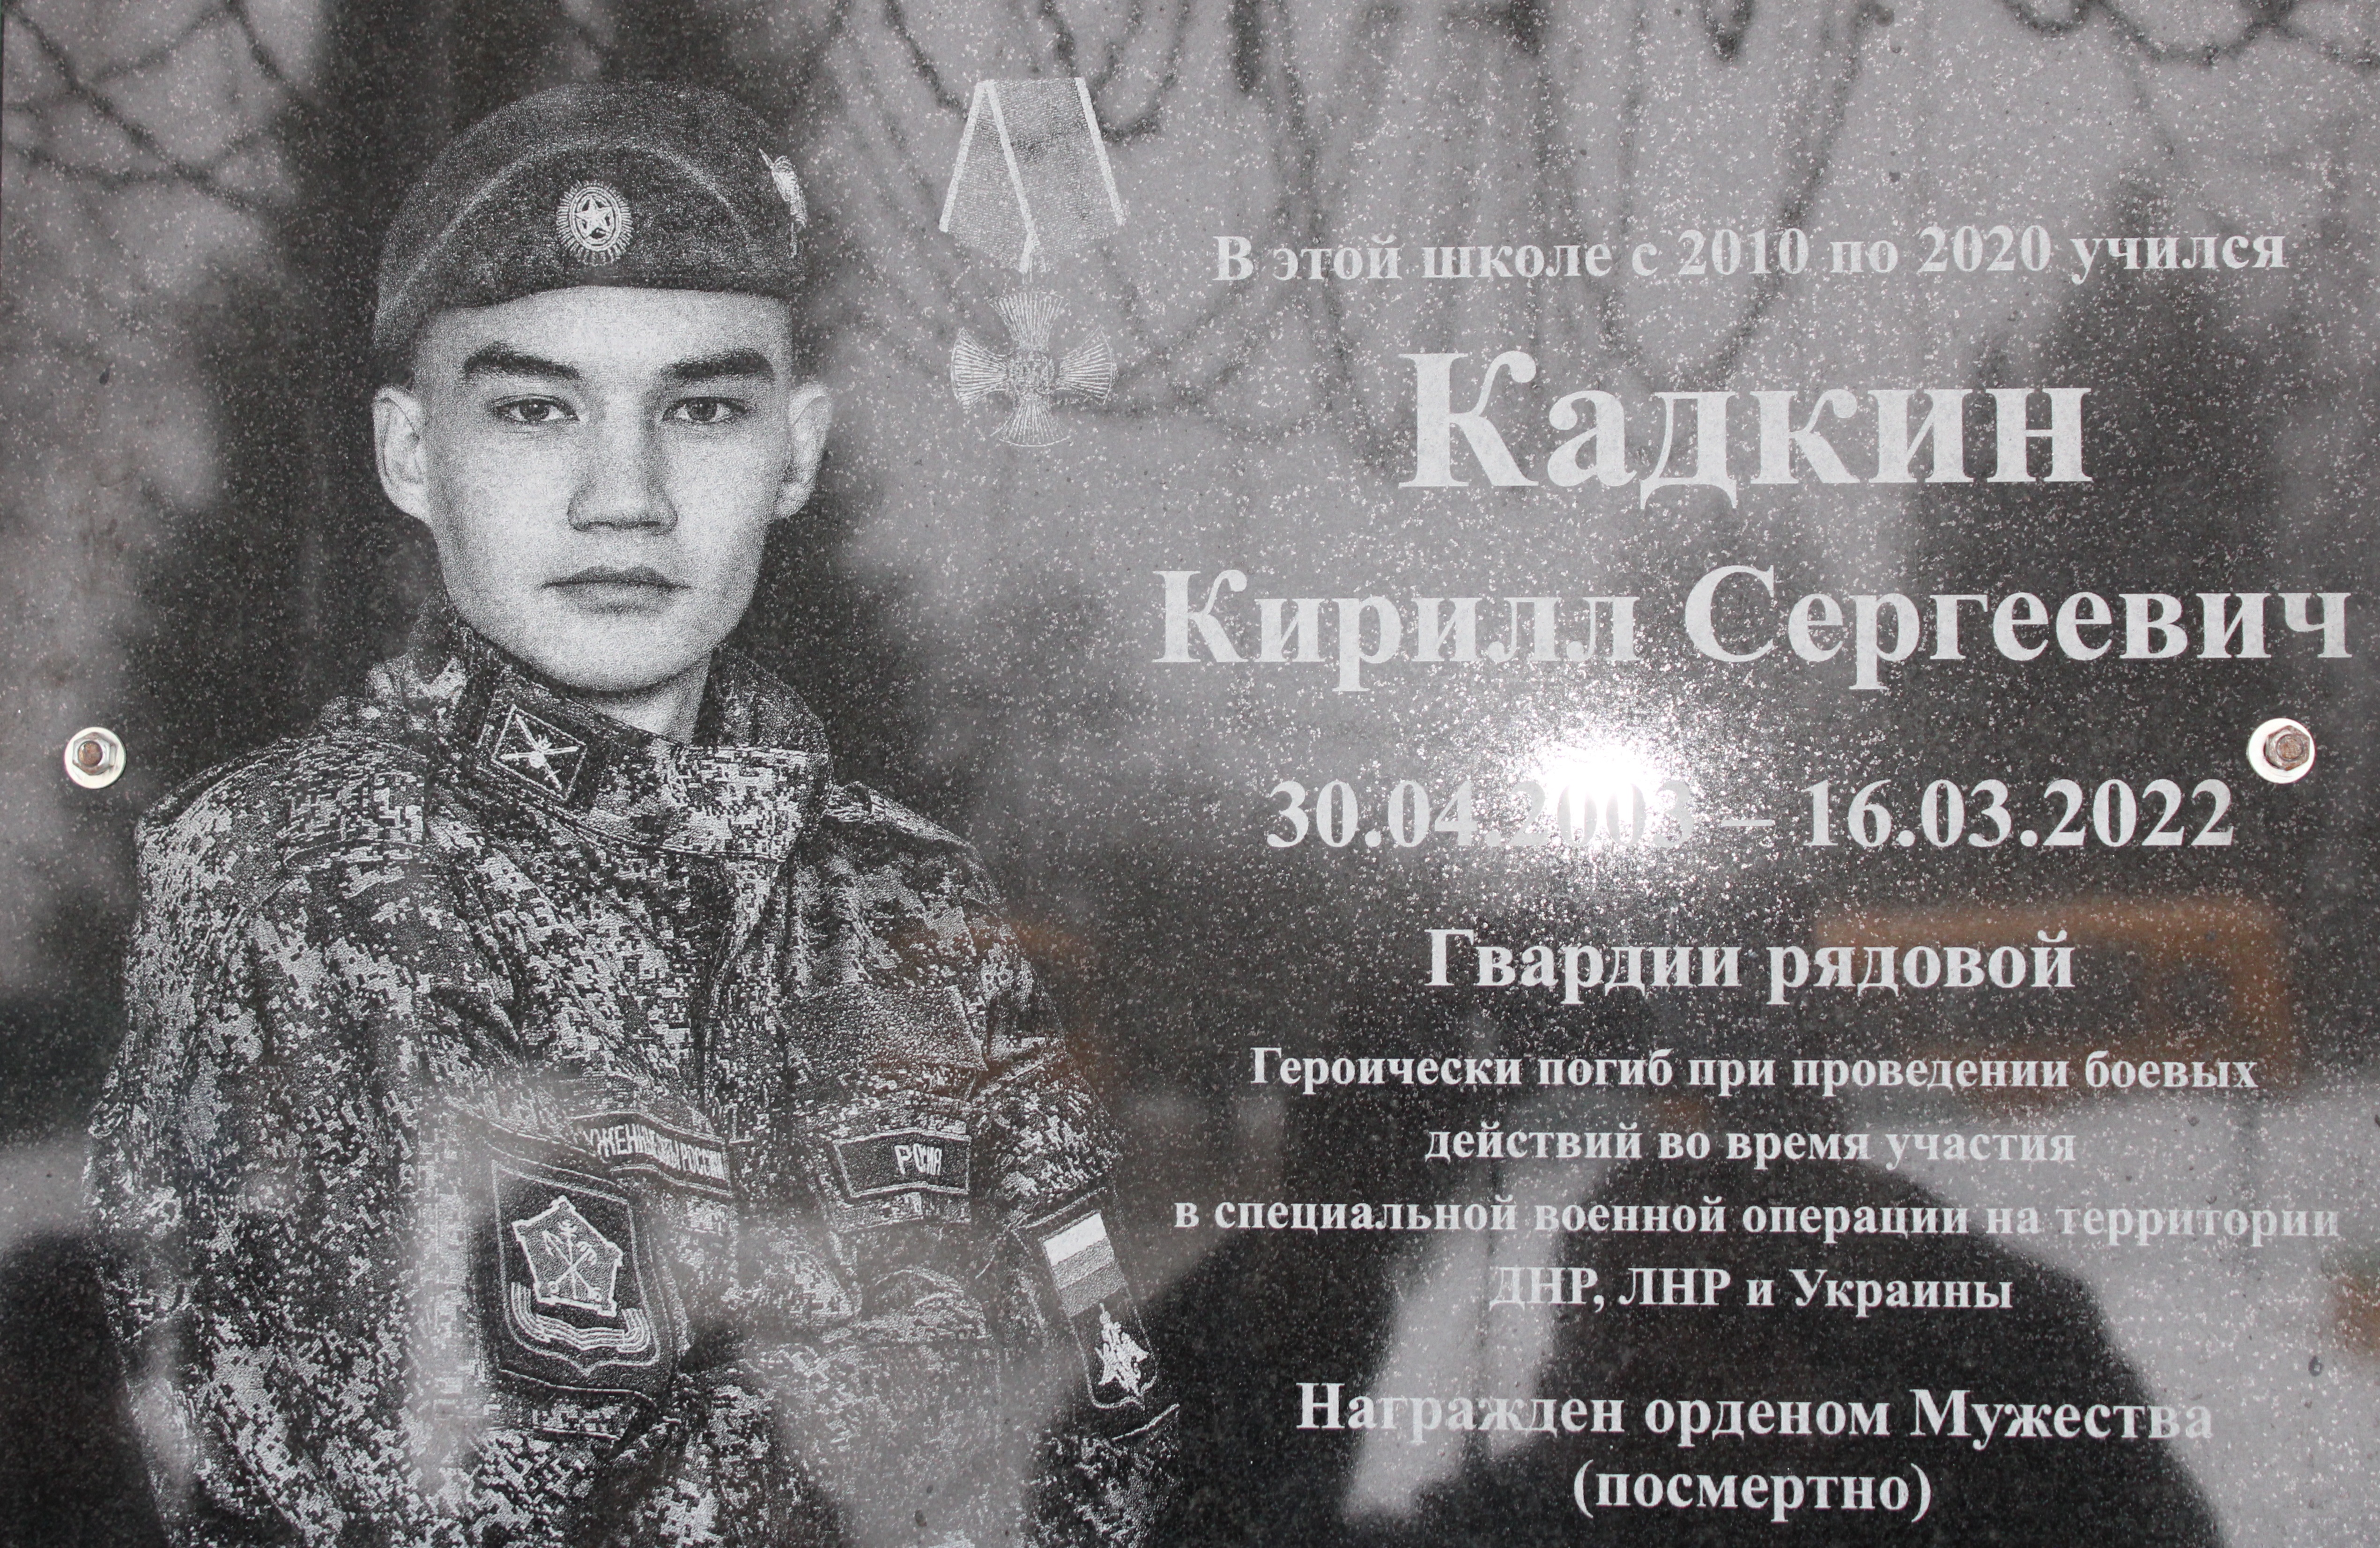 Годовщина гибели выпускника нашей школы Кадкина Кирилла, погибшего при участии в СВО на Украине